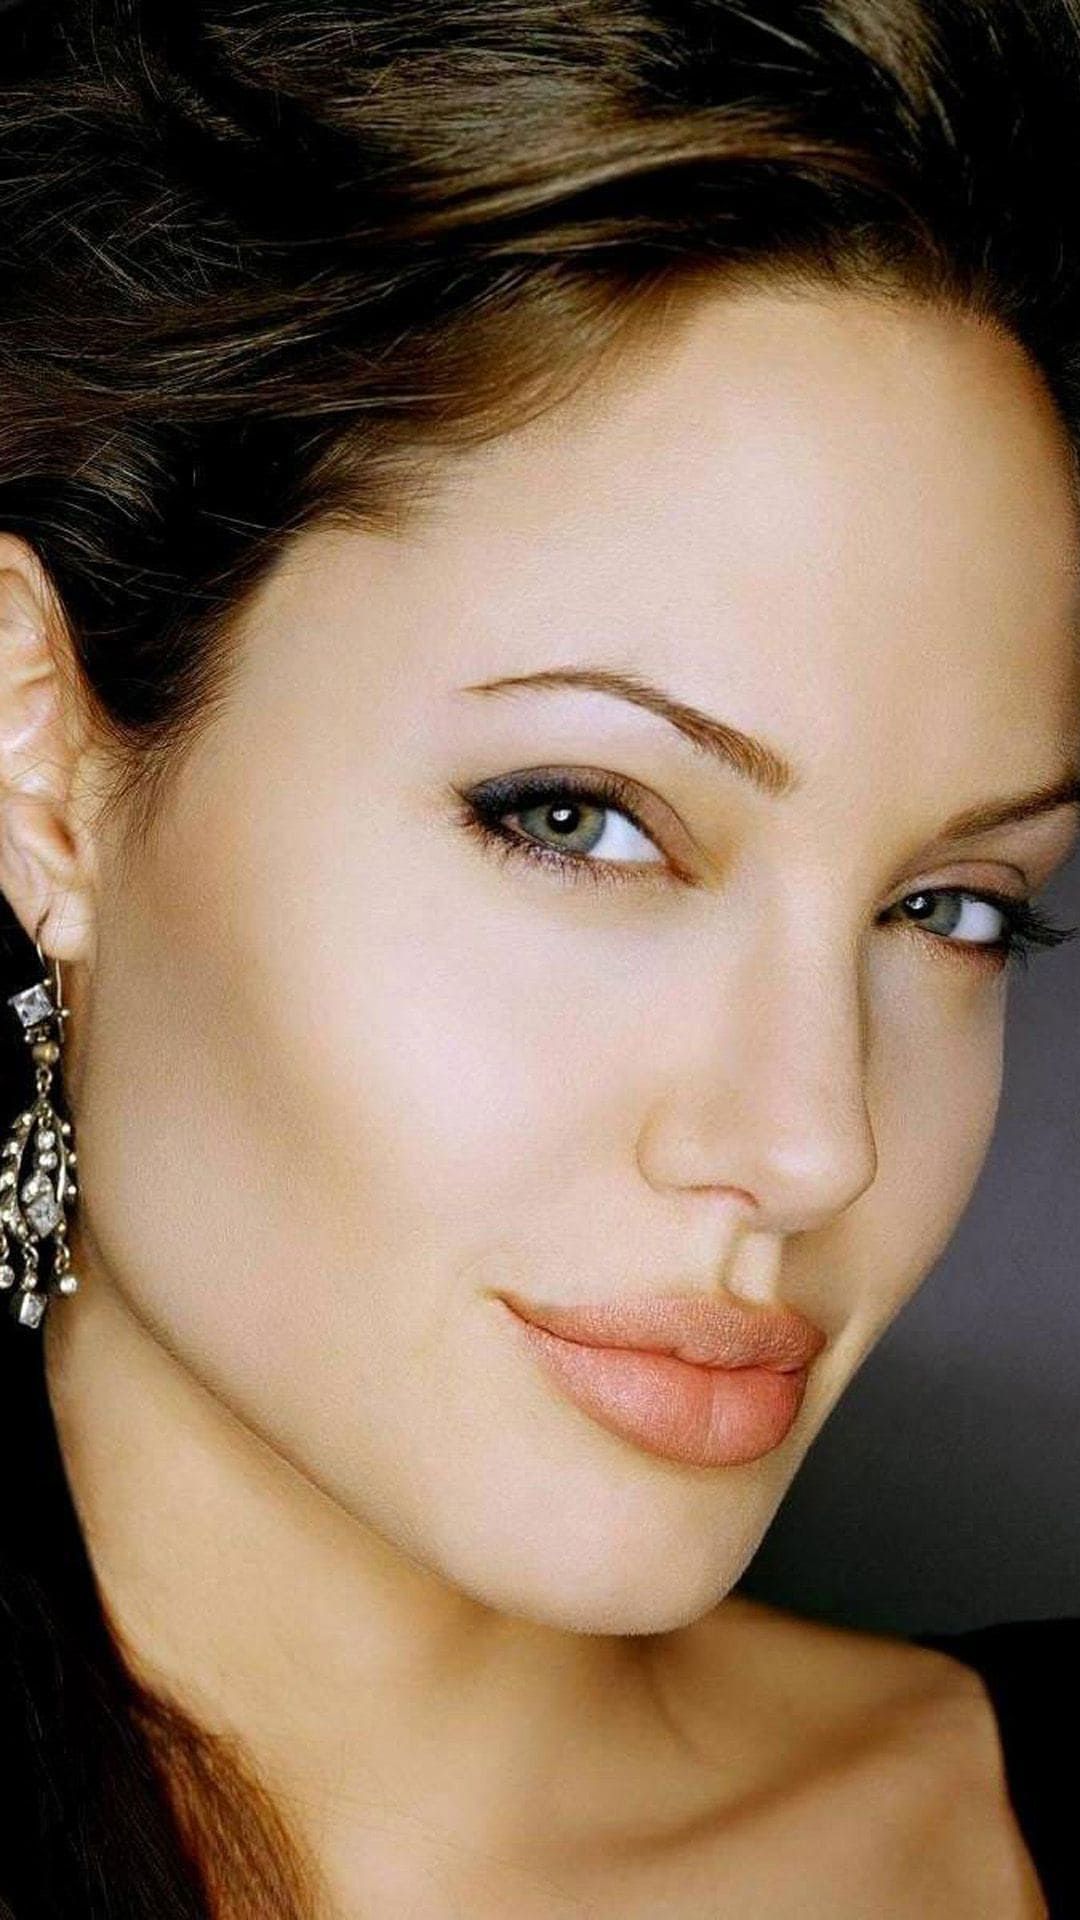 Раскосые глаза Анджелина Джоли